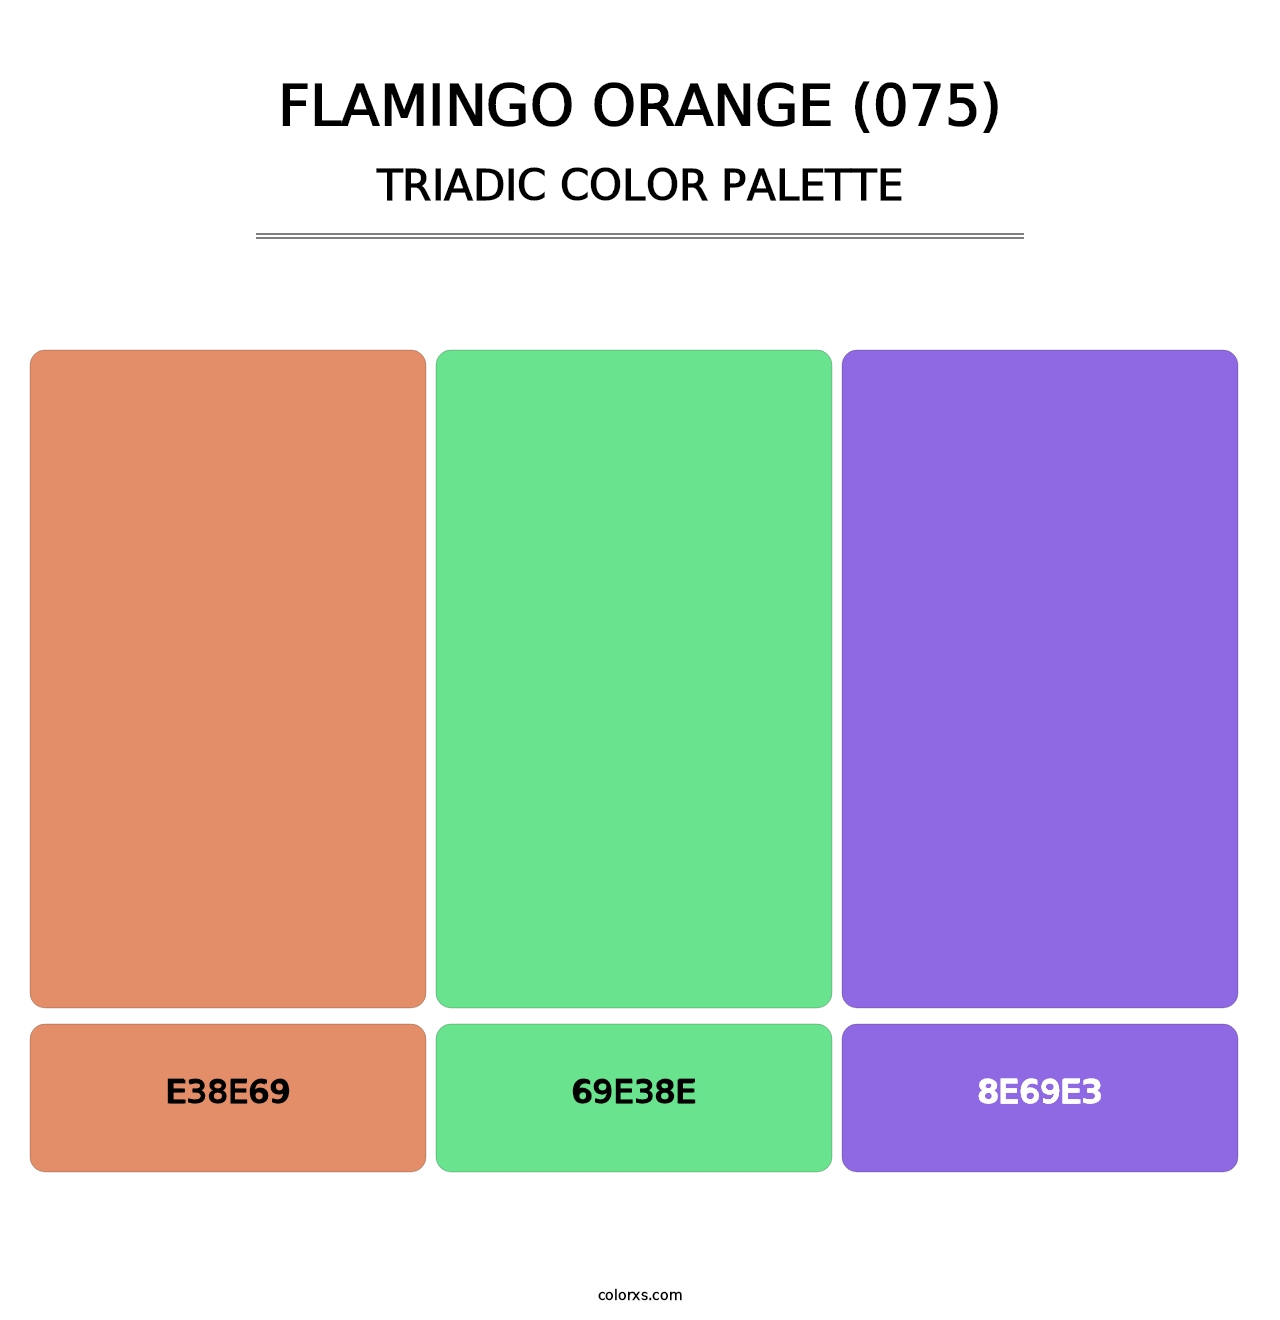 Flamingo Orange (075) - Triadic Color Palette